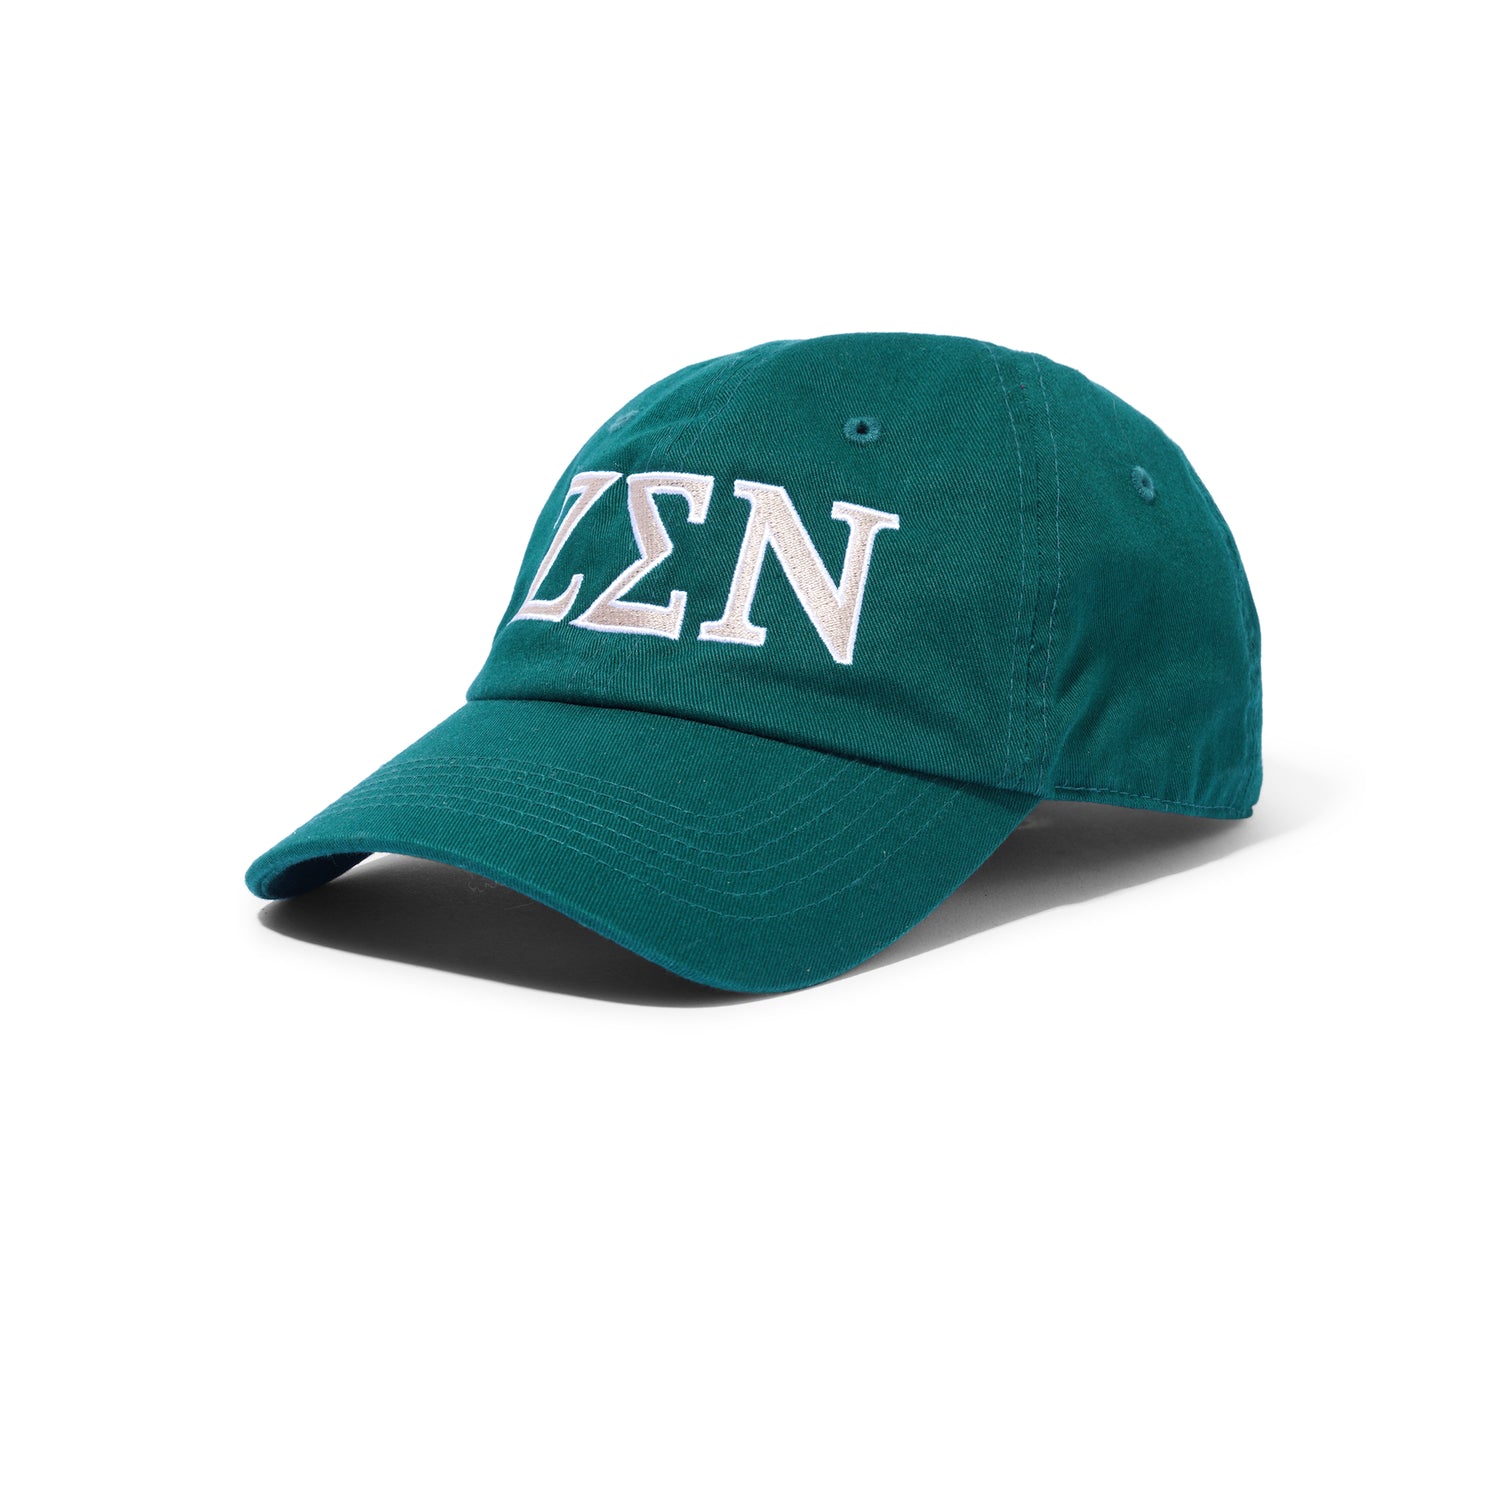 Zen Dad Hat, Forest